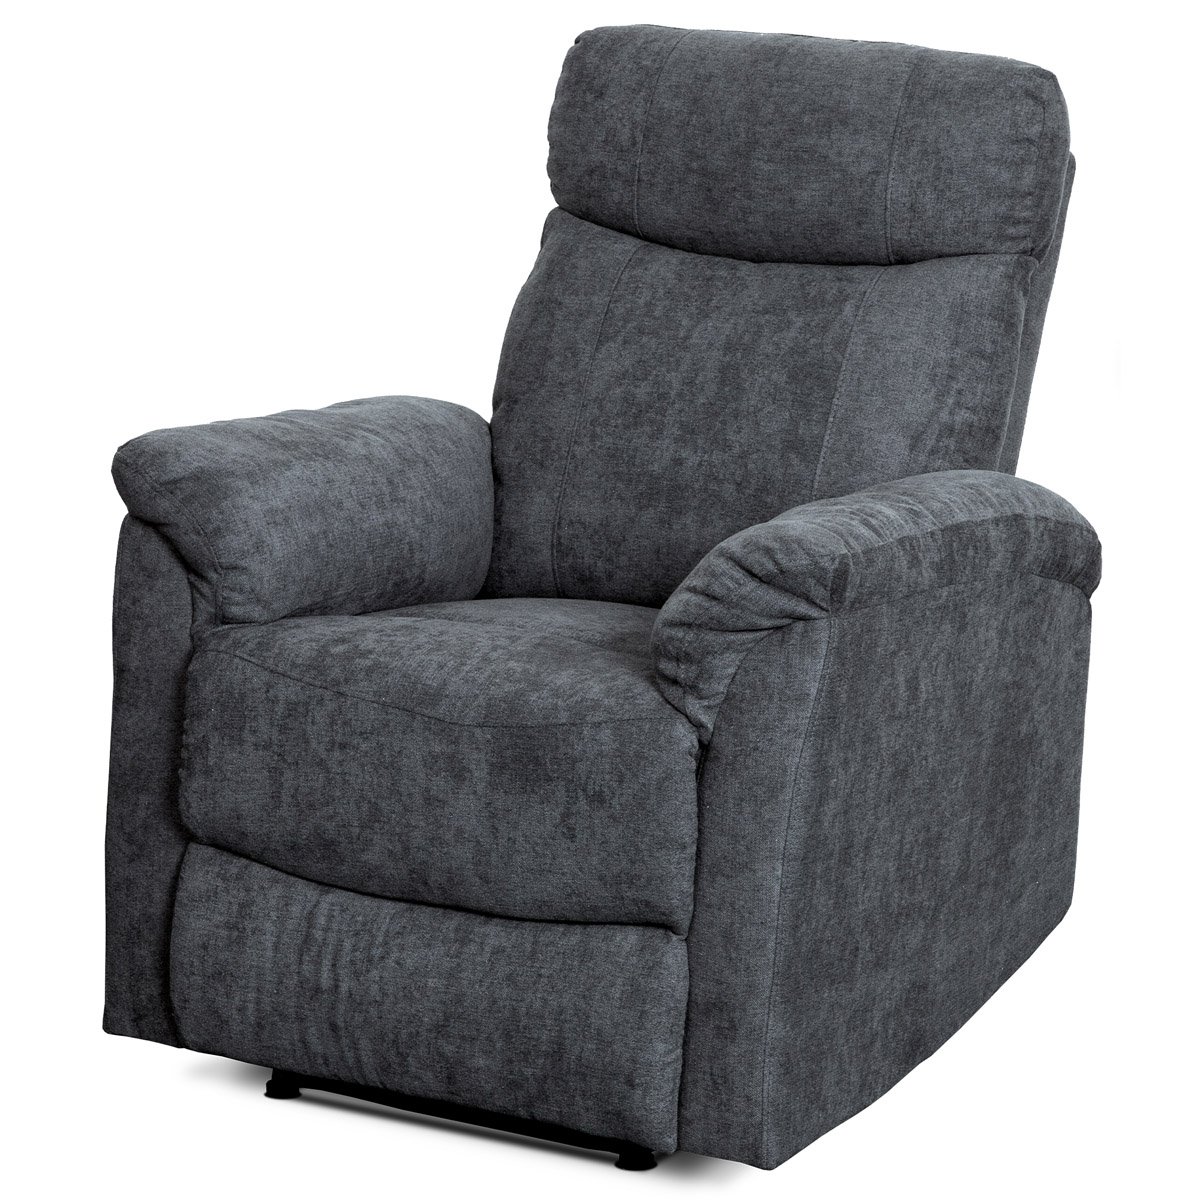 Relaxační sedačka 3+1+1, potah šedá látka se strukturou vintage, funkce Relax I/II s aretací - ASD-311 GREY AKCE